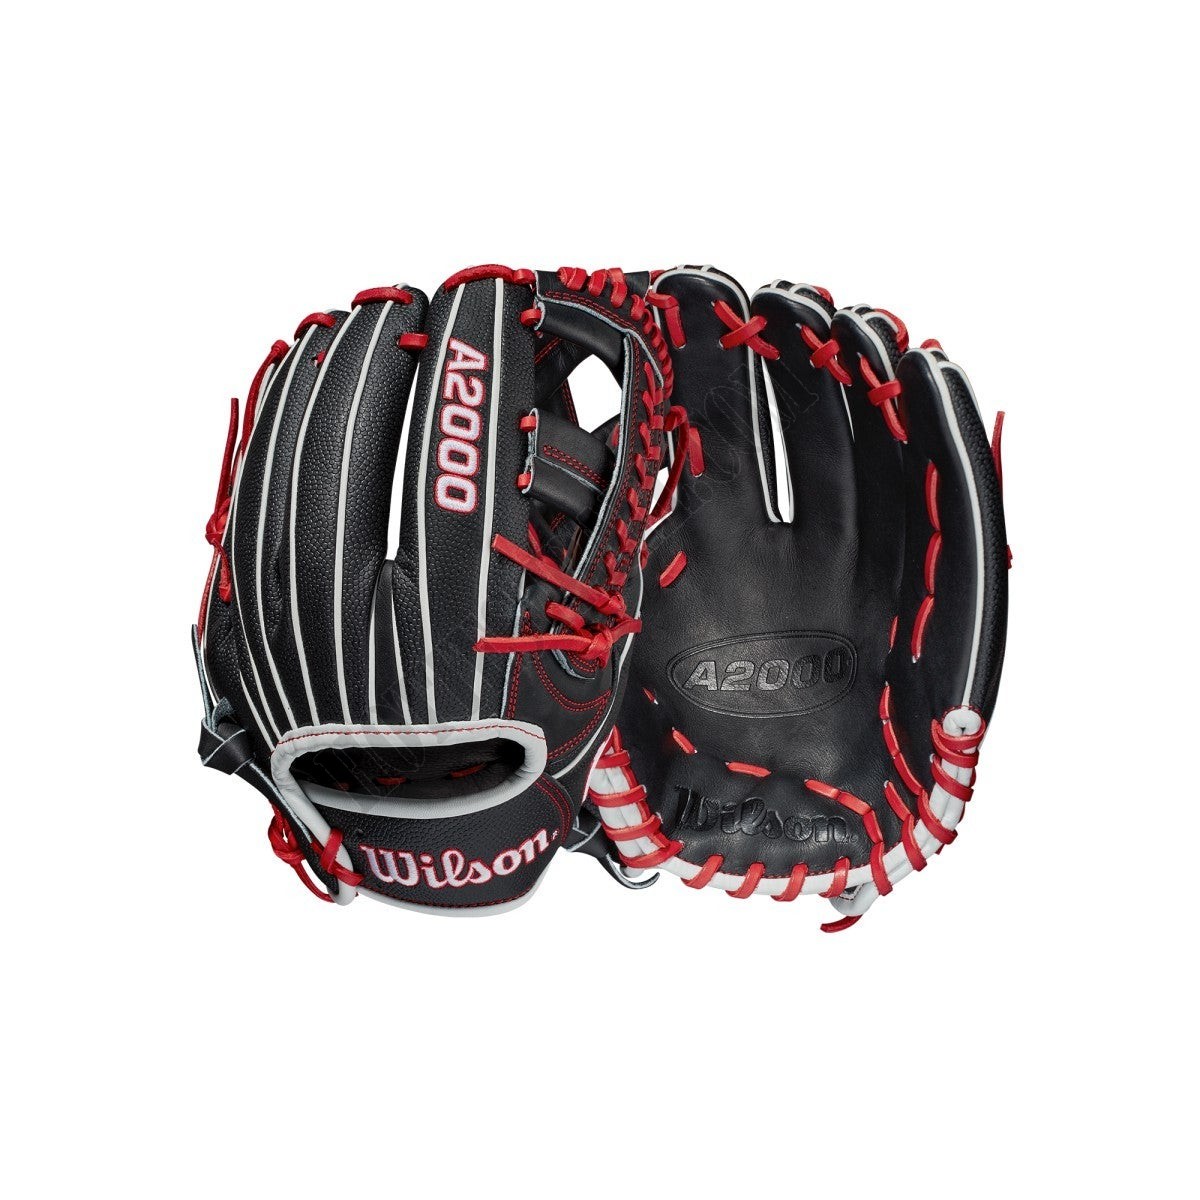 2021 A2000 1785SS 11.75" Infield Baseball Glove ● Wilson Promotions - 2021 A2000 1785SS 11.75" Infield Baseball Glove ● Wilson Promotions